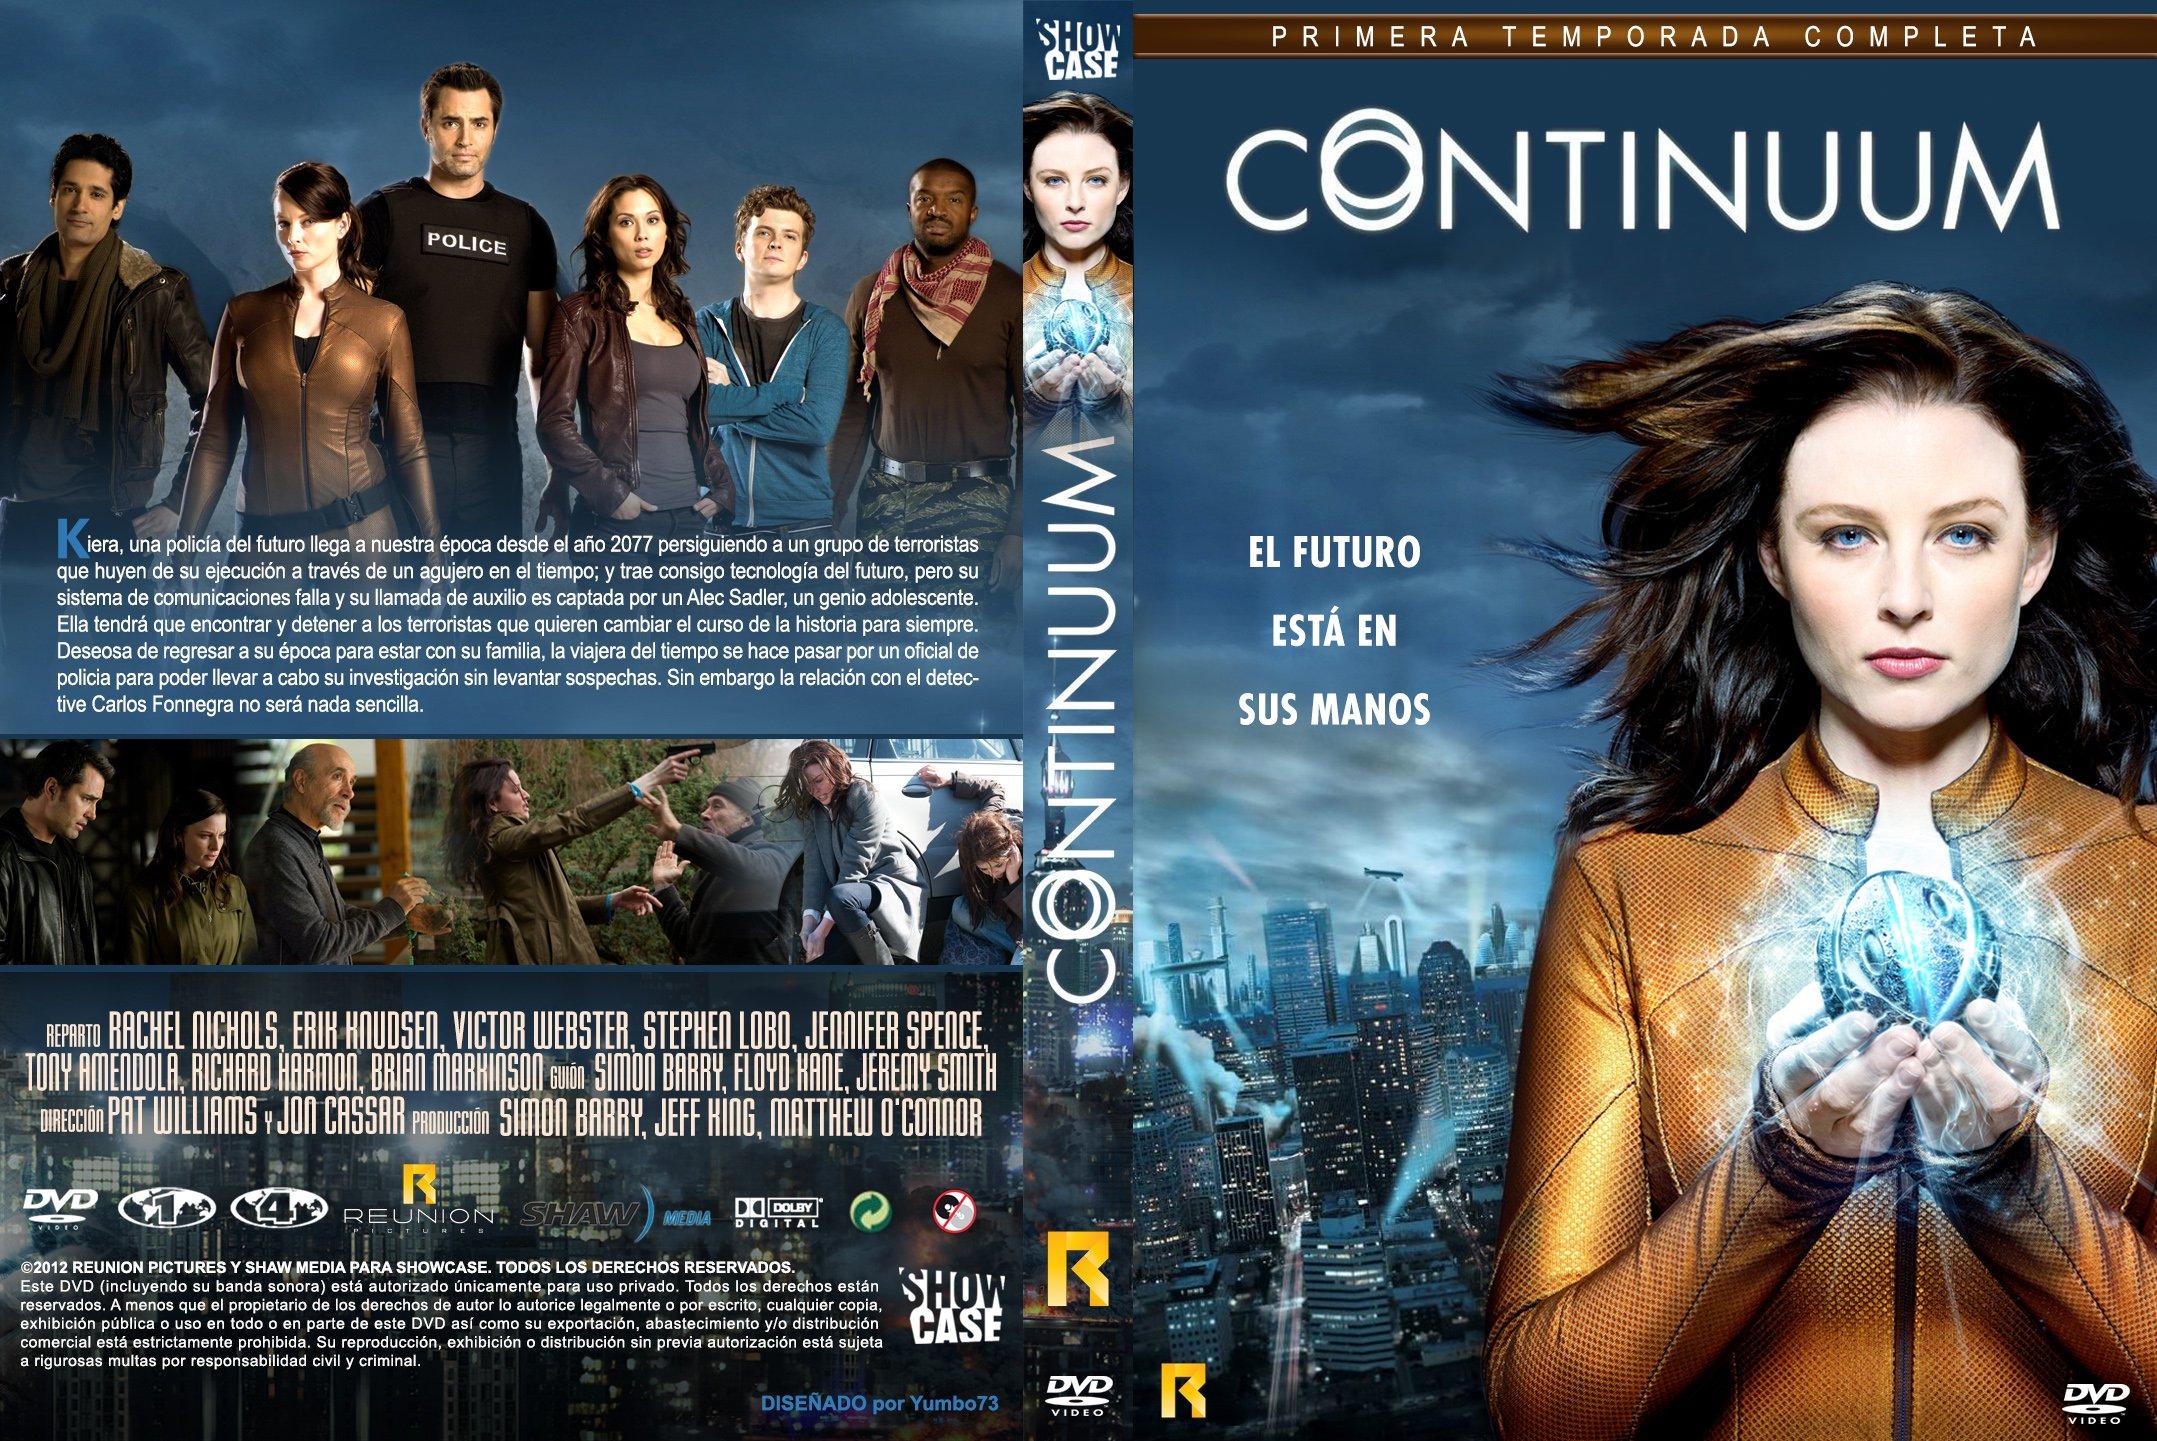 continuum, Action, Sci fi, Thriller, Drama, Series